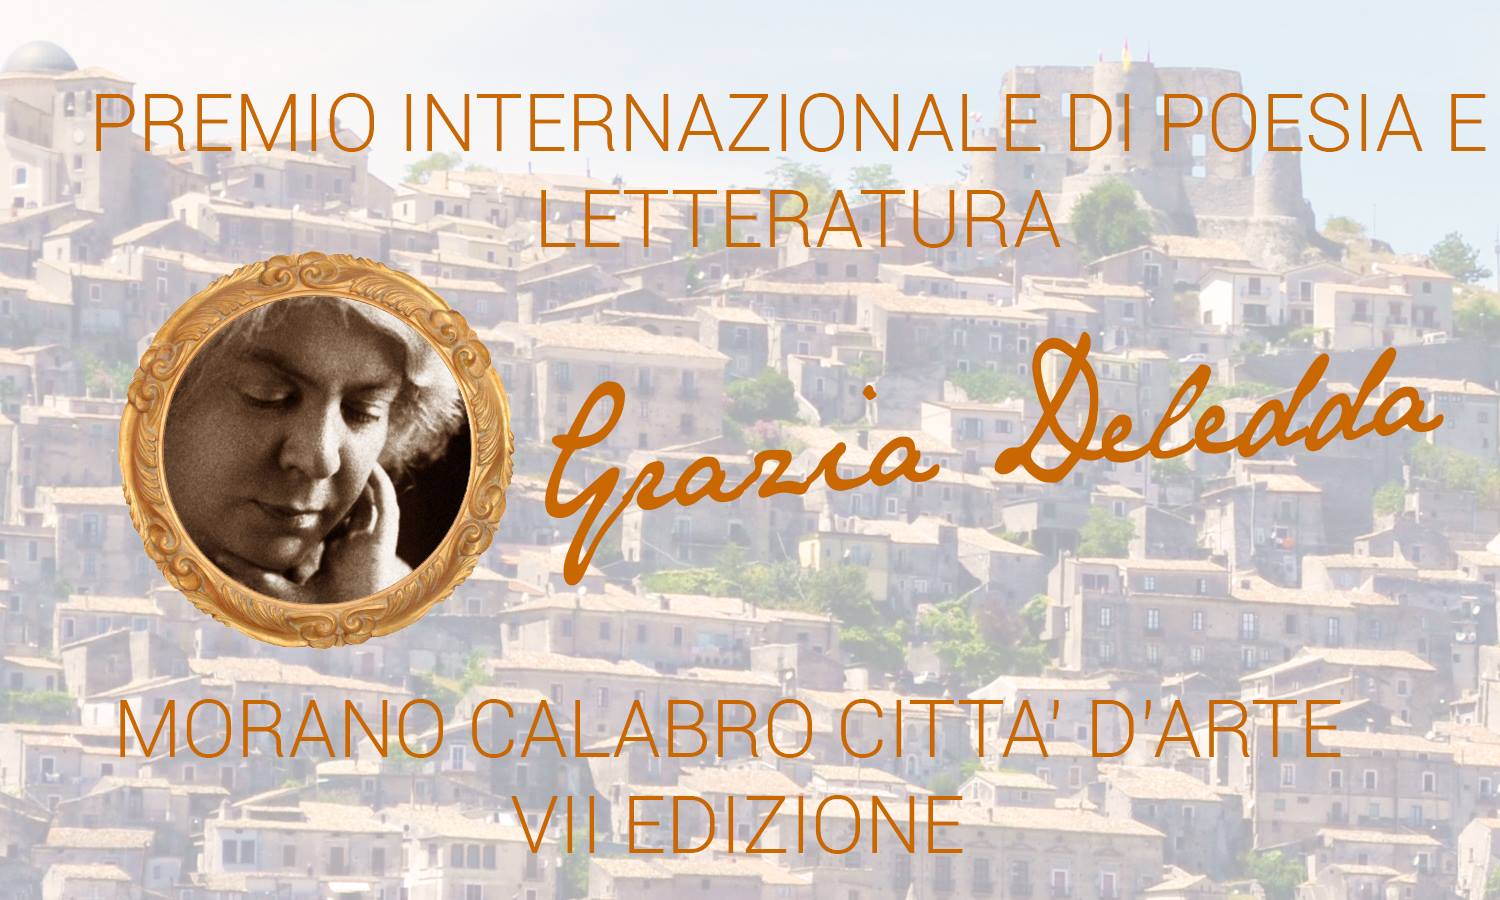 Premio Internazionale di Poesia e Letteratura Grazia Deledda – Morano Calabro Città D’Arte VII Edizione